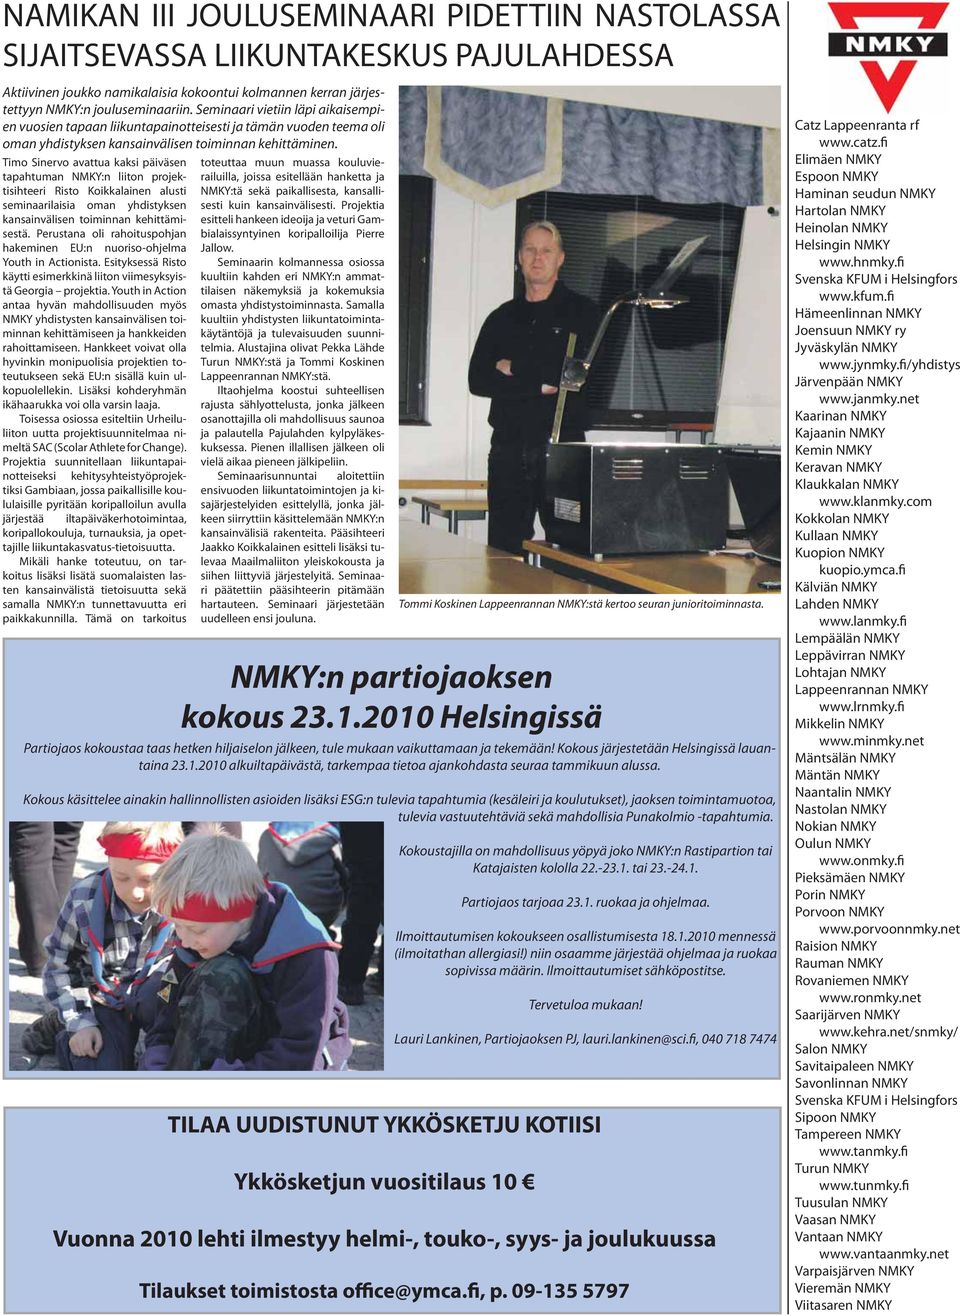 Timo Sinervo avattua kaksi päiväsen tapahtuman NMKY:n liiton projektisihteeri Risto Koikkalainen alusti seminaarilaisia oman yhdistyksen kansainvälisen toiminnan kehittämisestä.